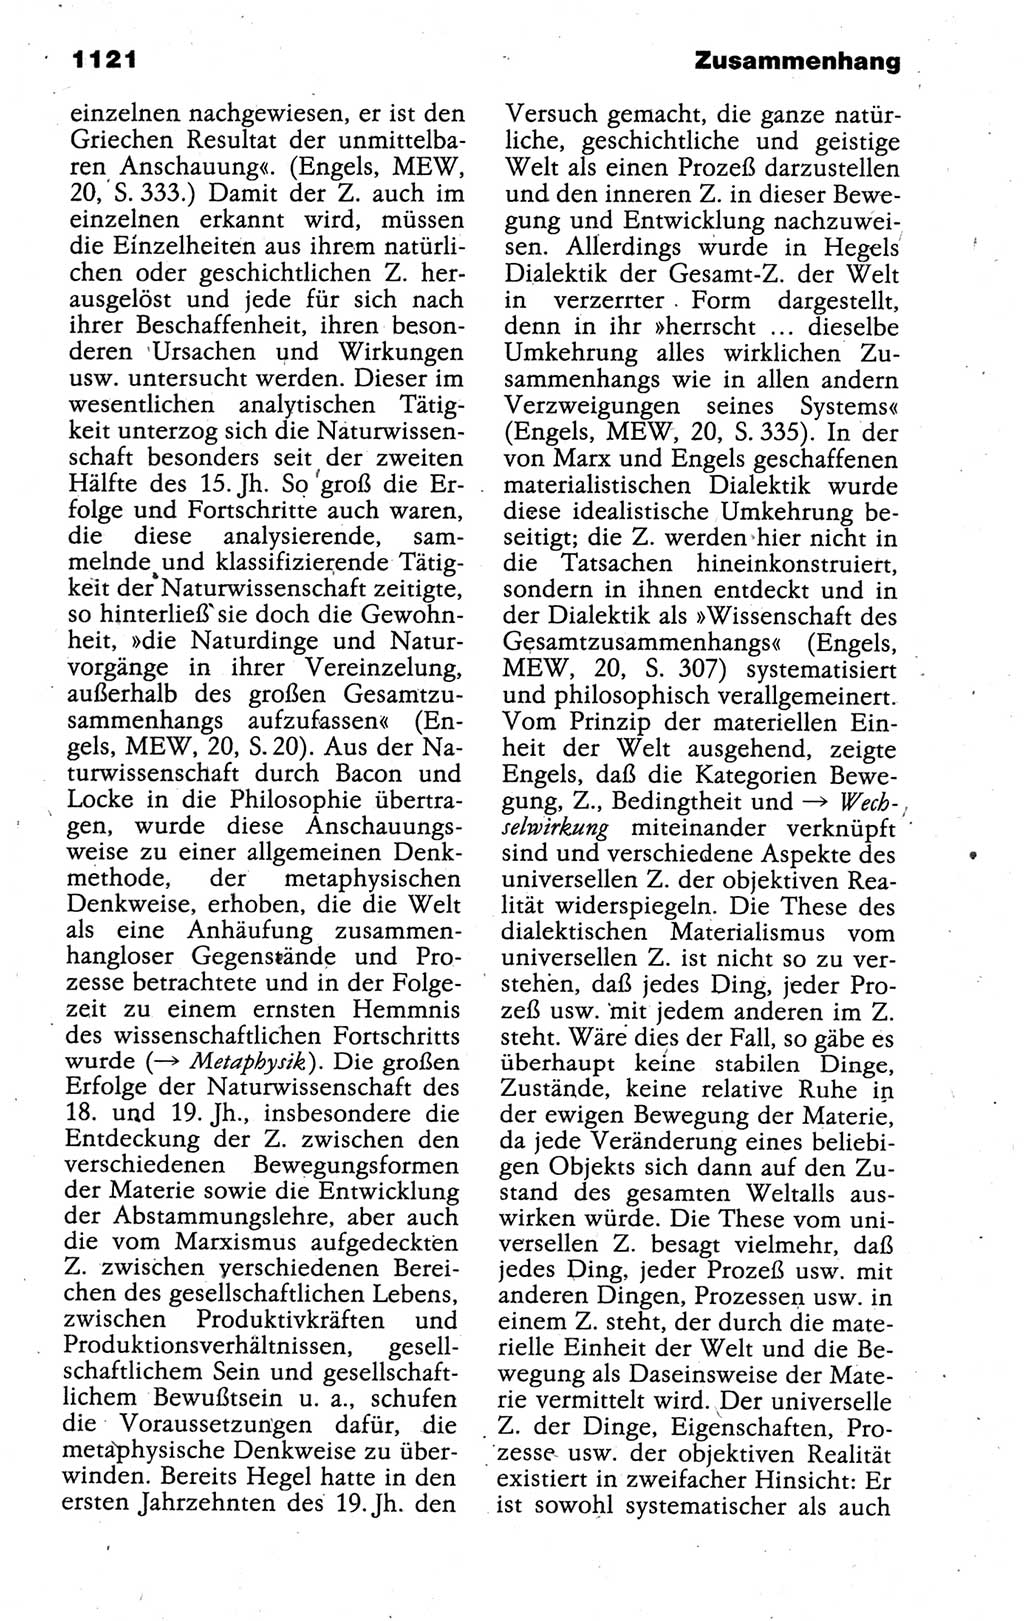 Kleines politisches Wörterbuch [Deutsche Demokratische Republik (DDR)] 1988, Seite 1121 (Kl. pol. Wb. DDR 1988, S. 1121)